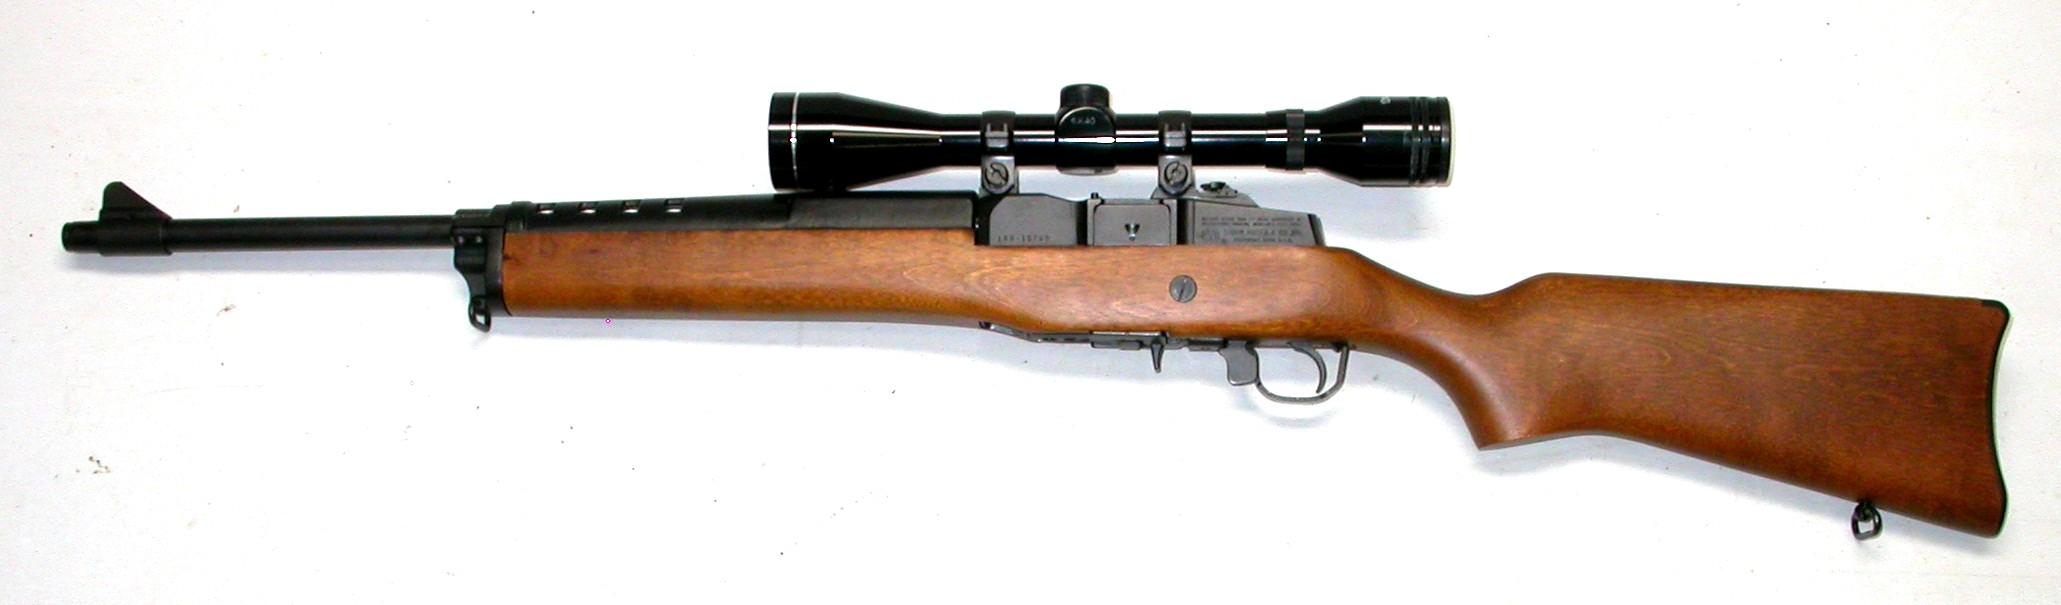 Ruger Mini-30 7.62x39 Semi-Automatic Carbine - FFL #189-10760 (JGD)